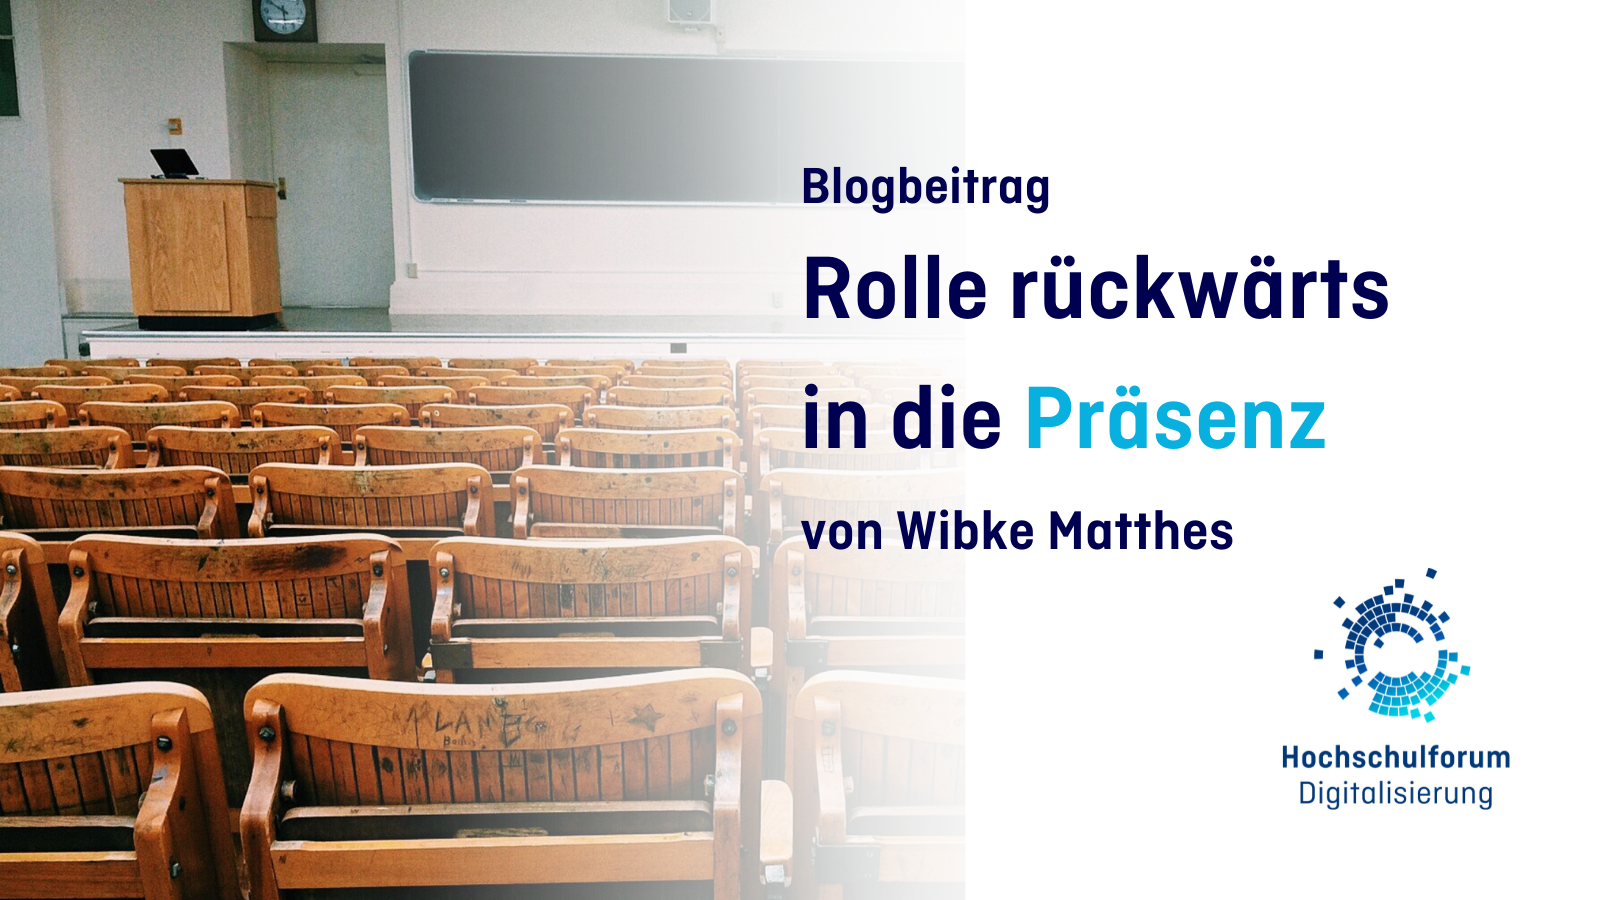 Bild: Ein leerer Vorlesungssaal mit Stuhlreihen und einer Tafel. Text: Blogbeitrag. Rolle rückwärts in die Präsenz. von Wibke Matthes.